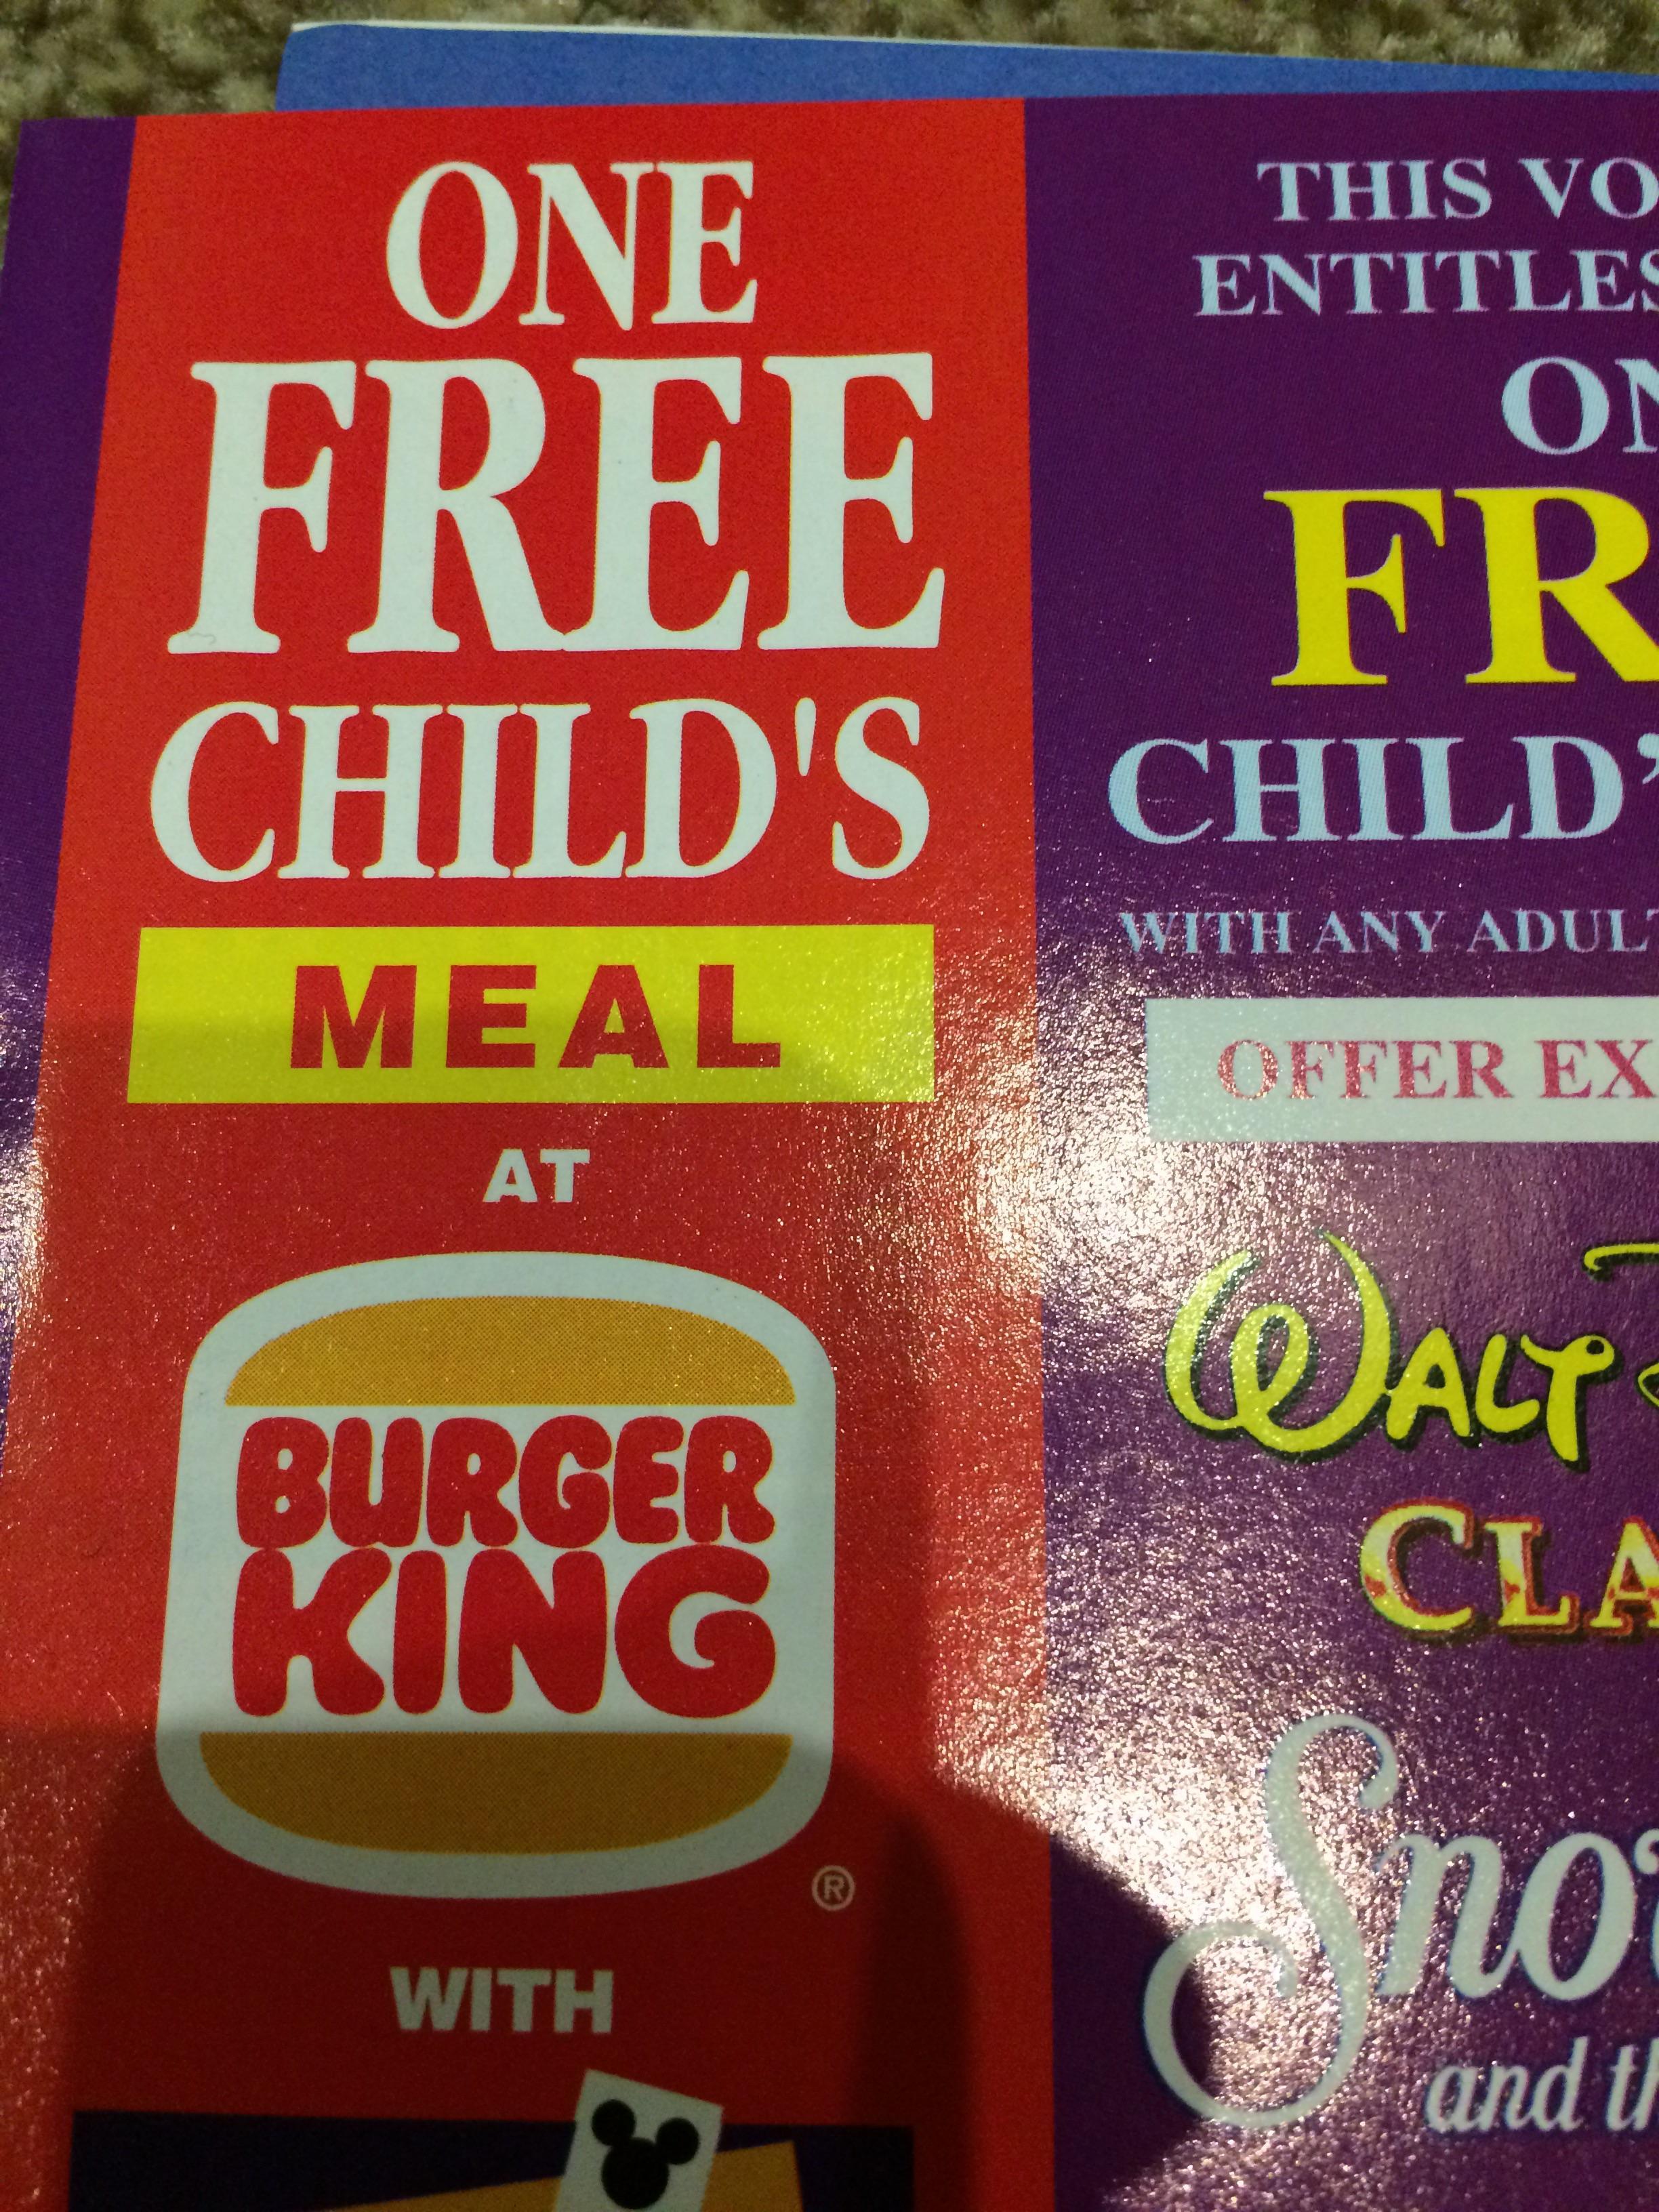 Old Burger King Logo - The old Burger King logo